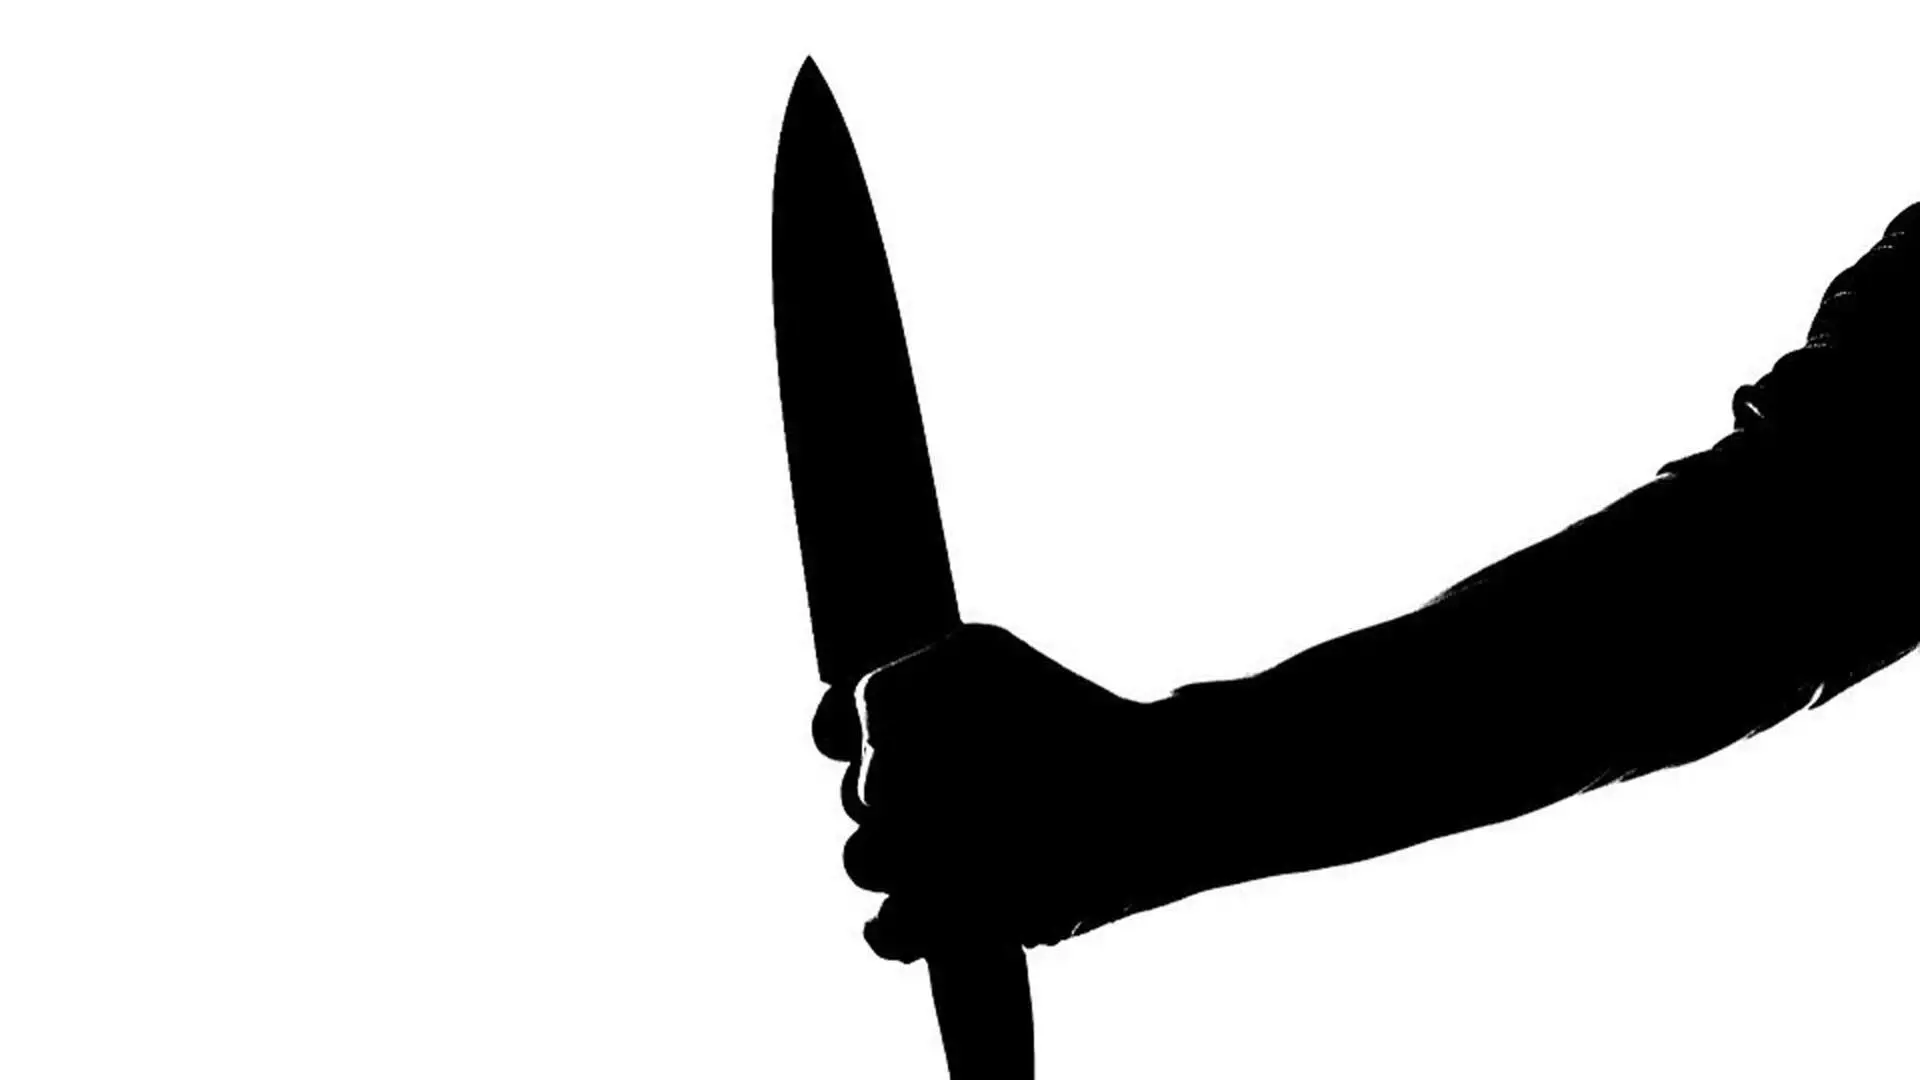 बैग चोरी के दौरान वेटर की चाकू मारकर हत्या, हत्यारे फरार